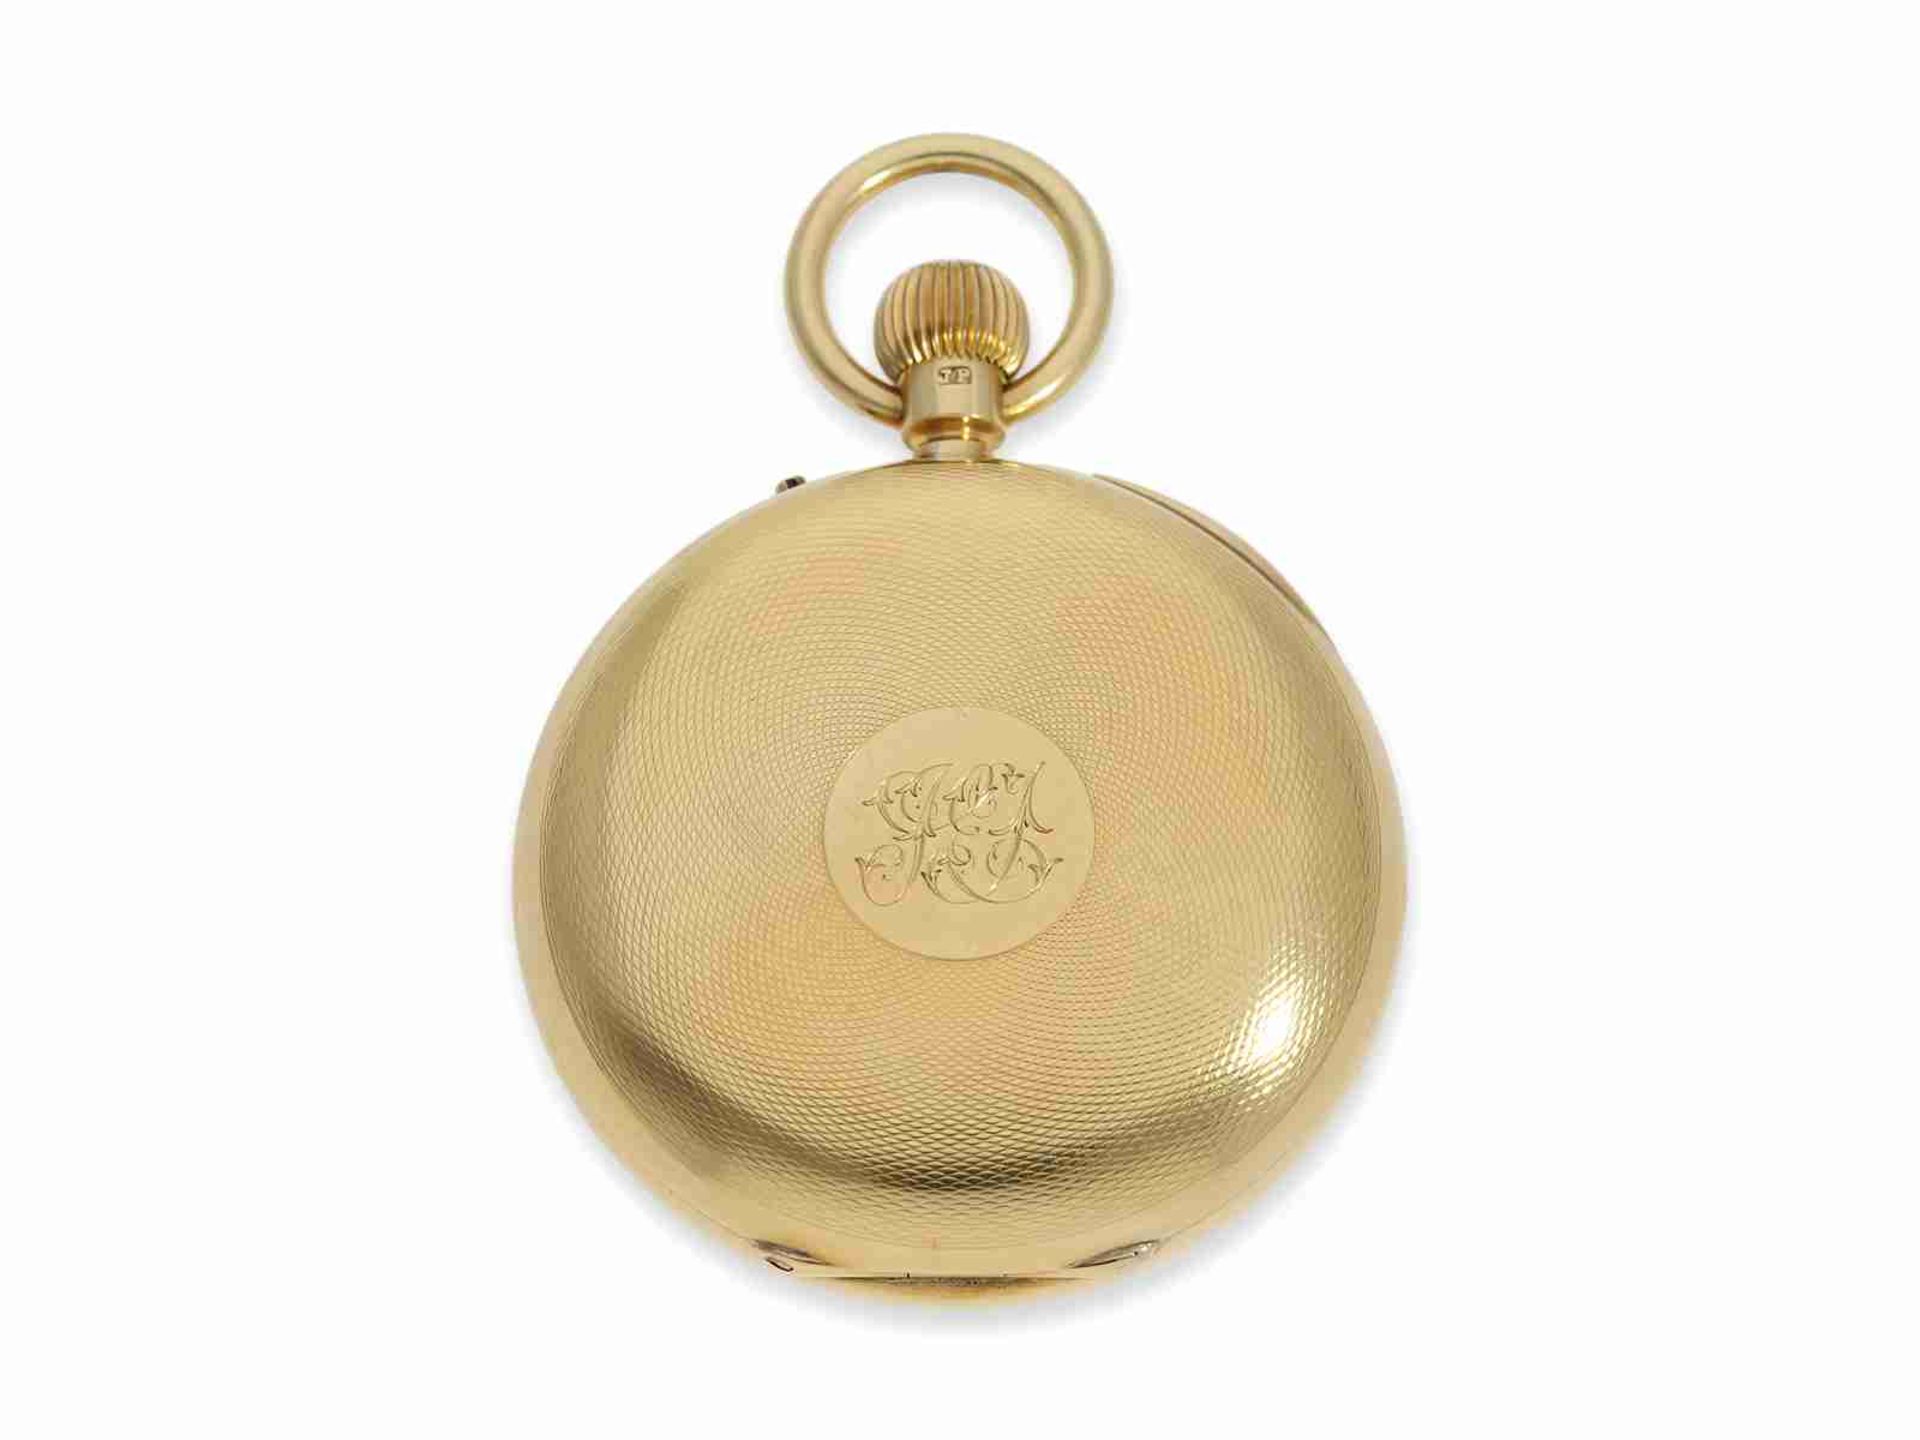 Taschenuhr: exquisite englische Präzisionstaschenuhr, Chronometermacher der Admiralität Usher & Cole - Bild 5 aus 5